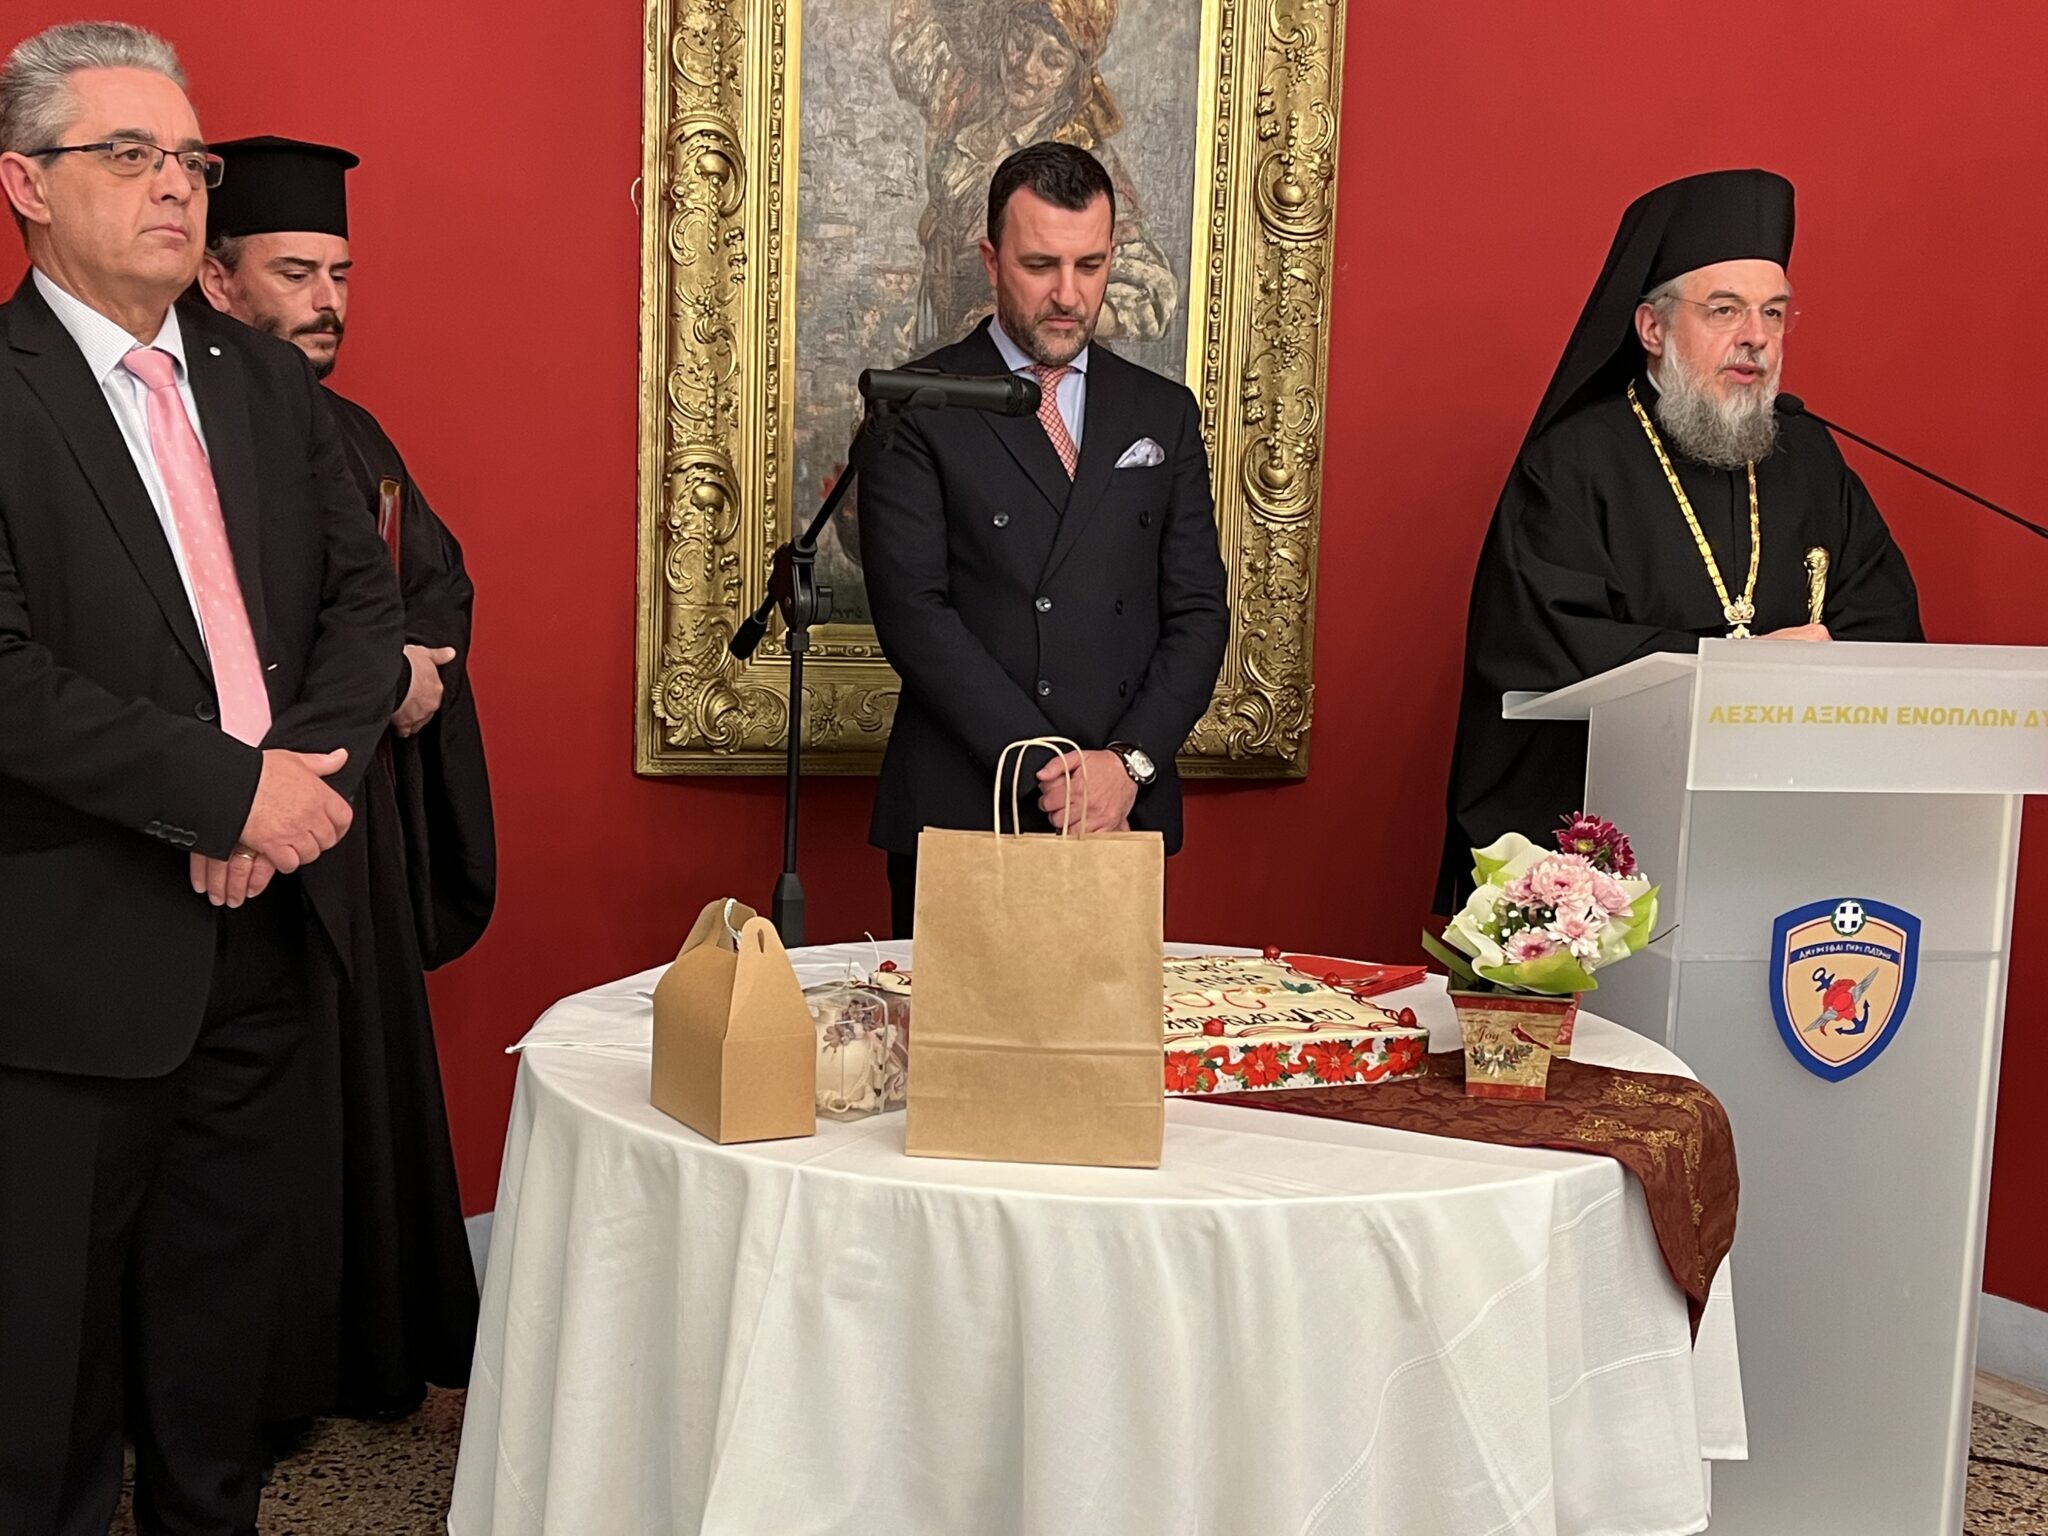 Ο Μητροπολίτης Γόρτυνος και Μεγαλοπόλεως χαιρέτησε την πίτα της Παγγορτυνιακής Ένωσης στην Αθήνα